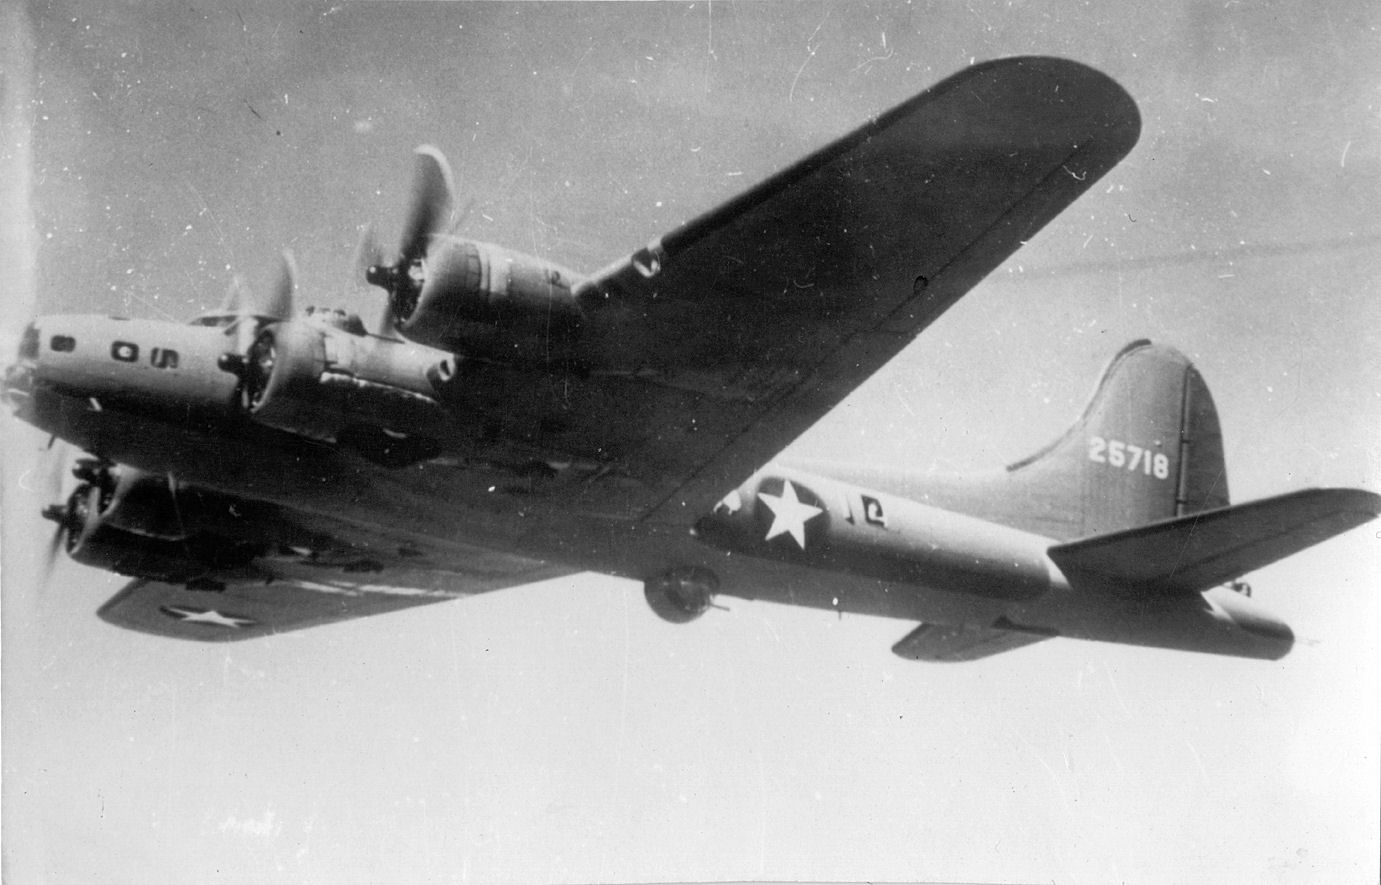 B-17 42-5718